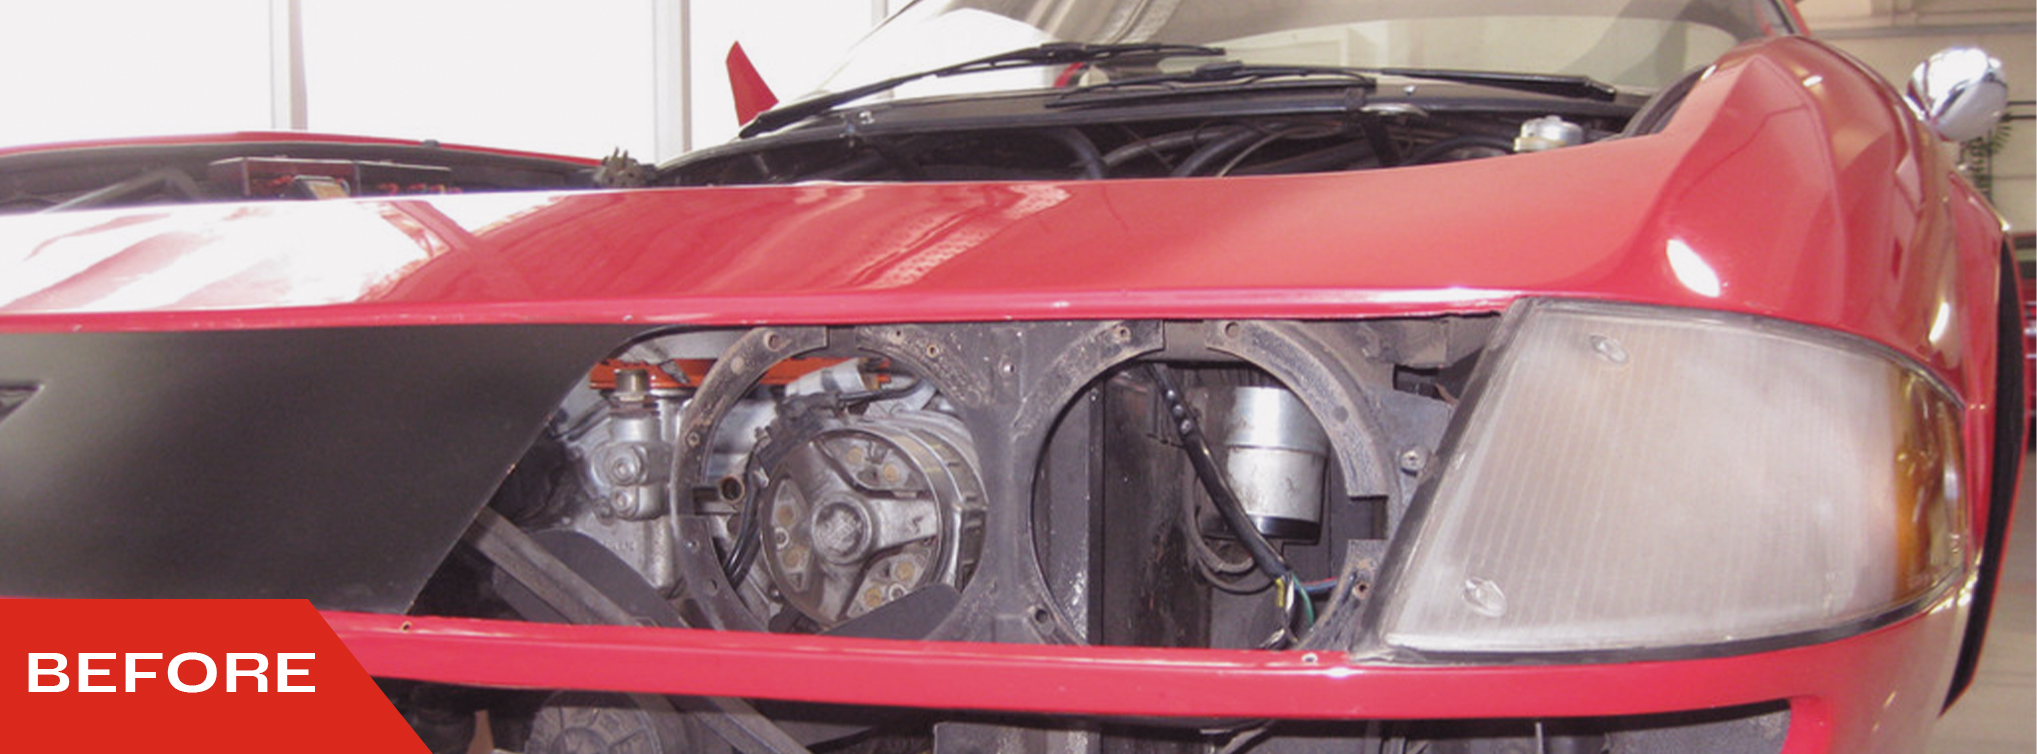 Ferarri 365 GTB/4 Daytona